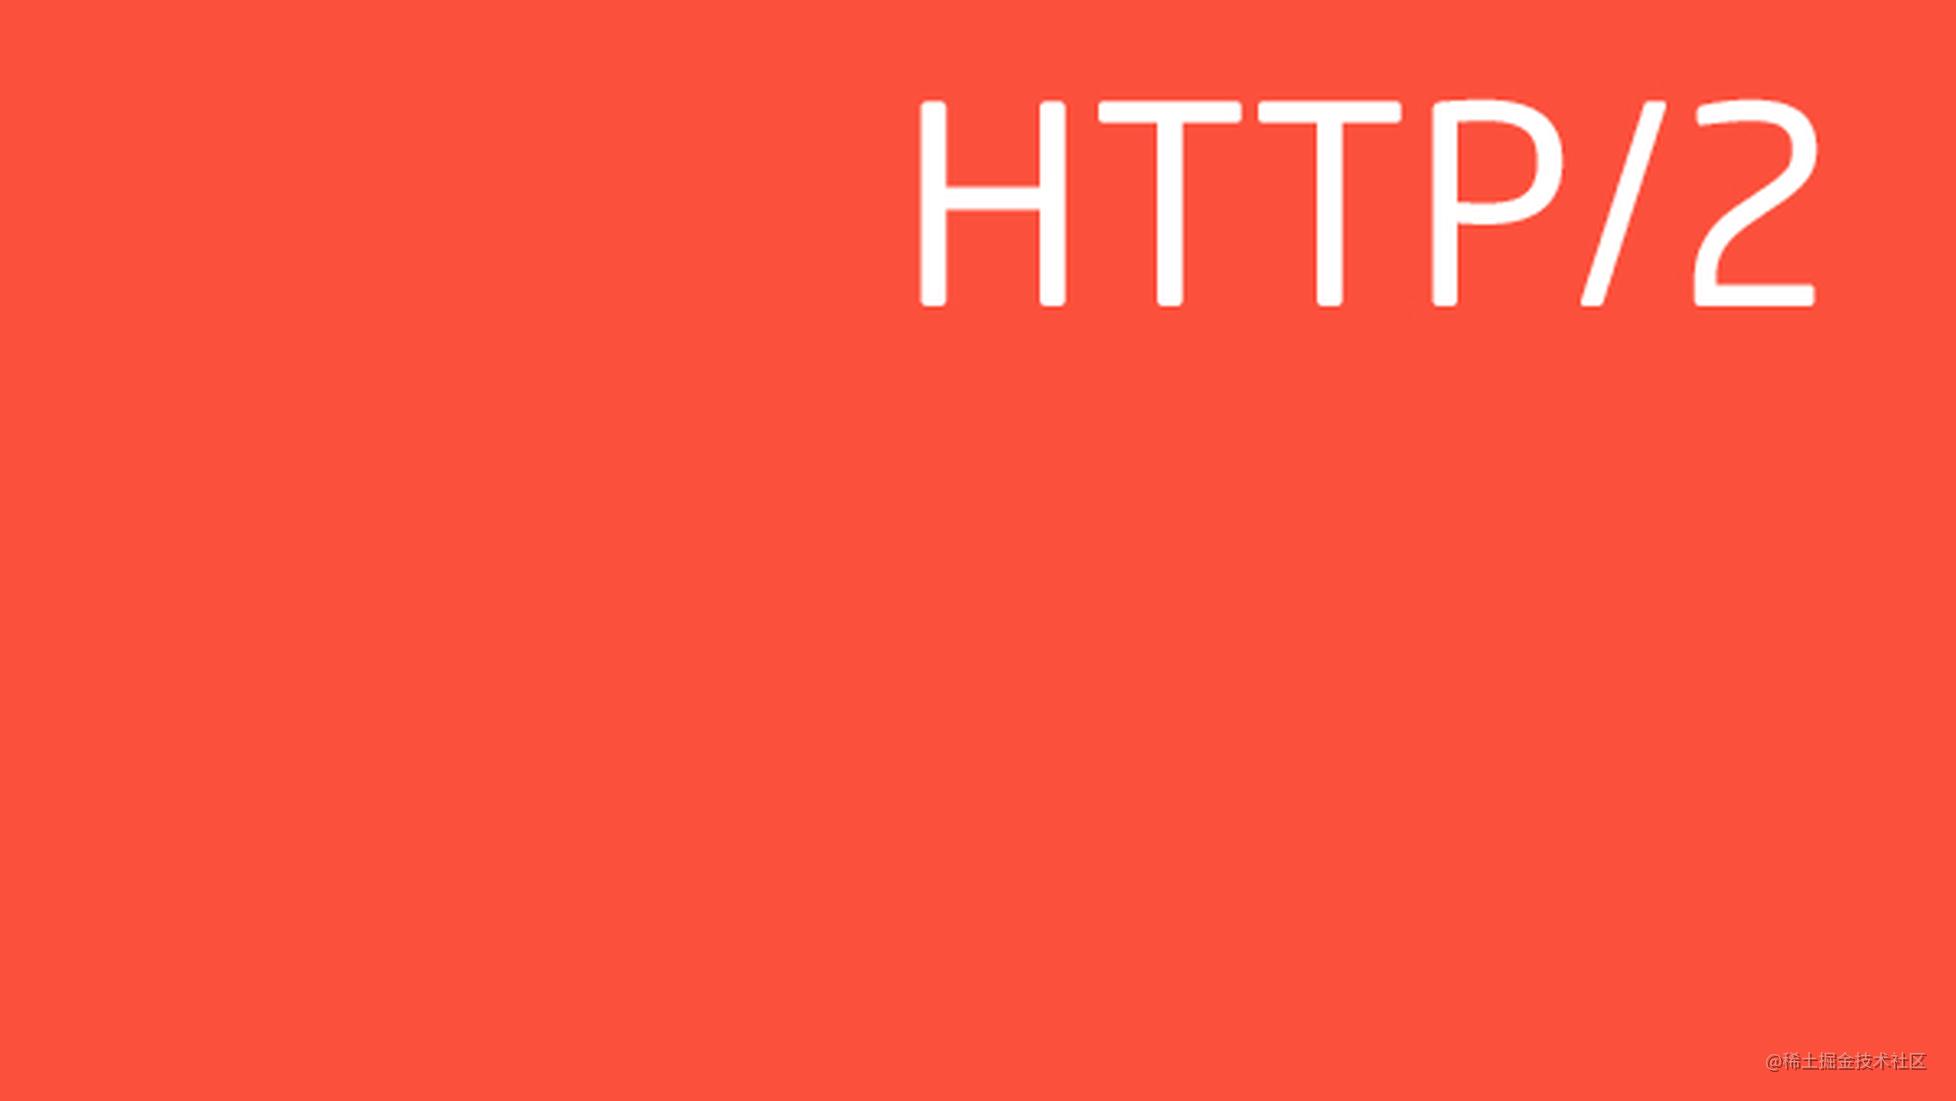 Web 开发者的 HTTP/2 性能优化指南